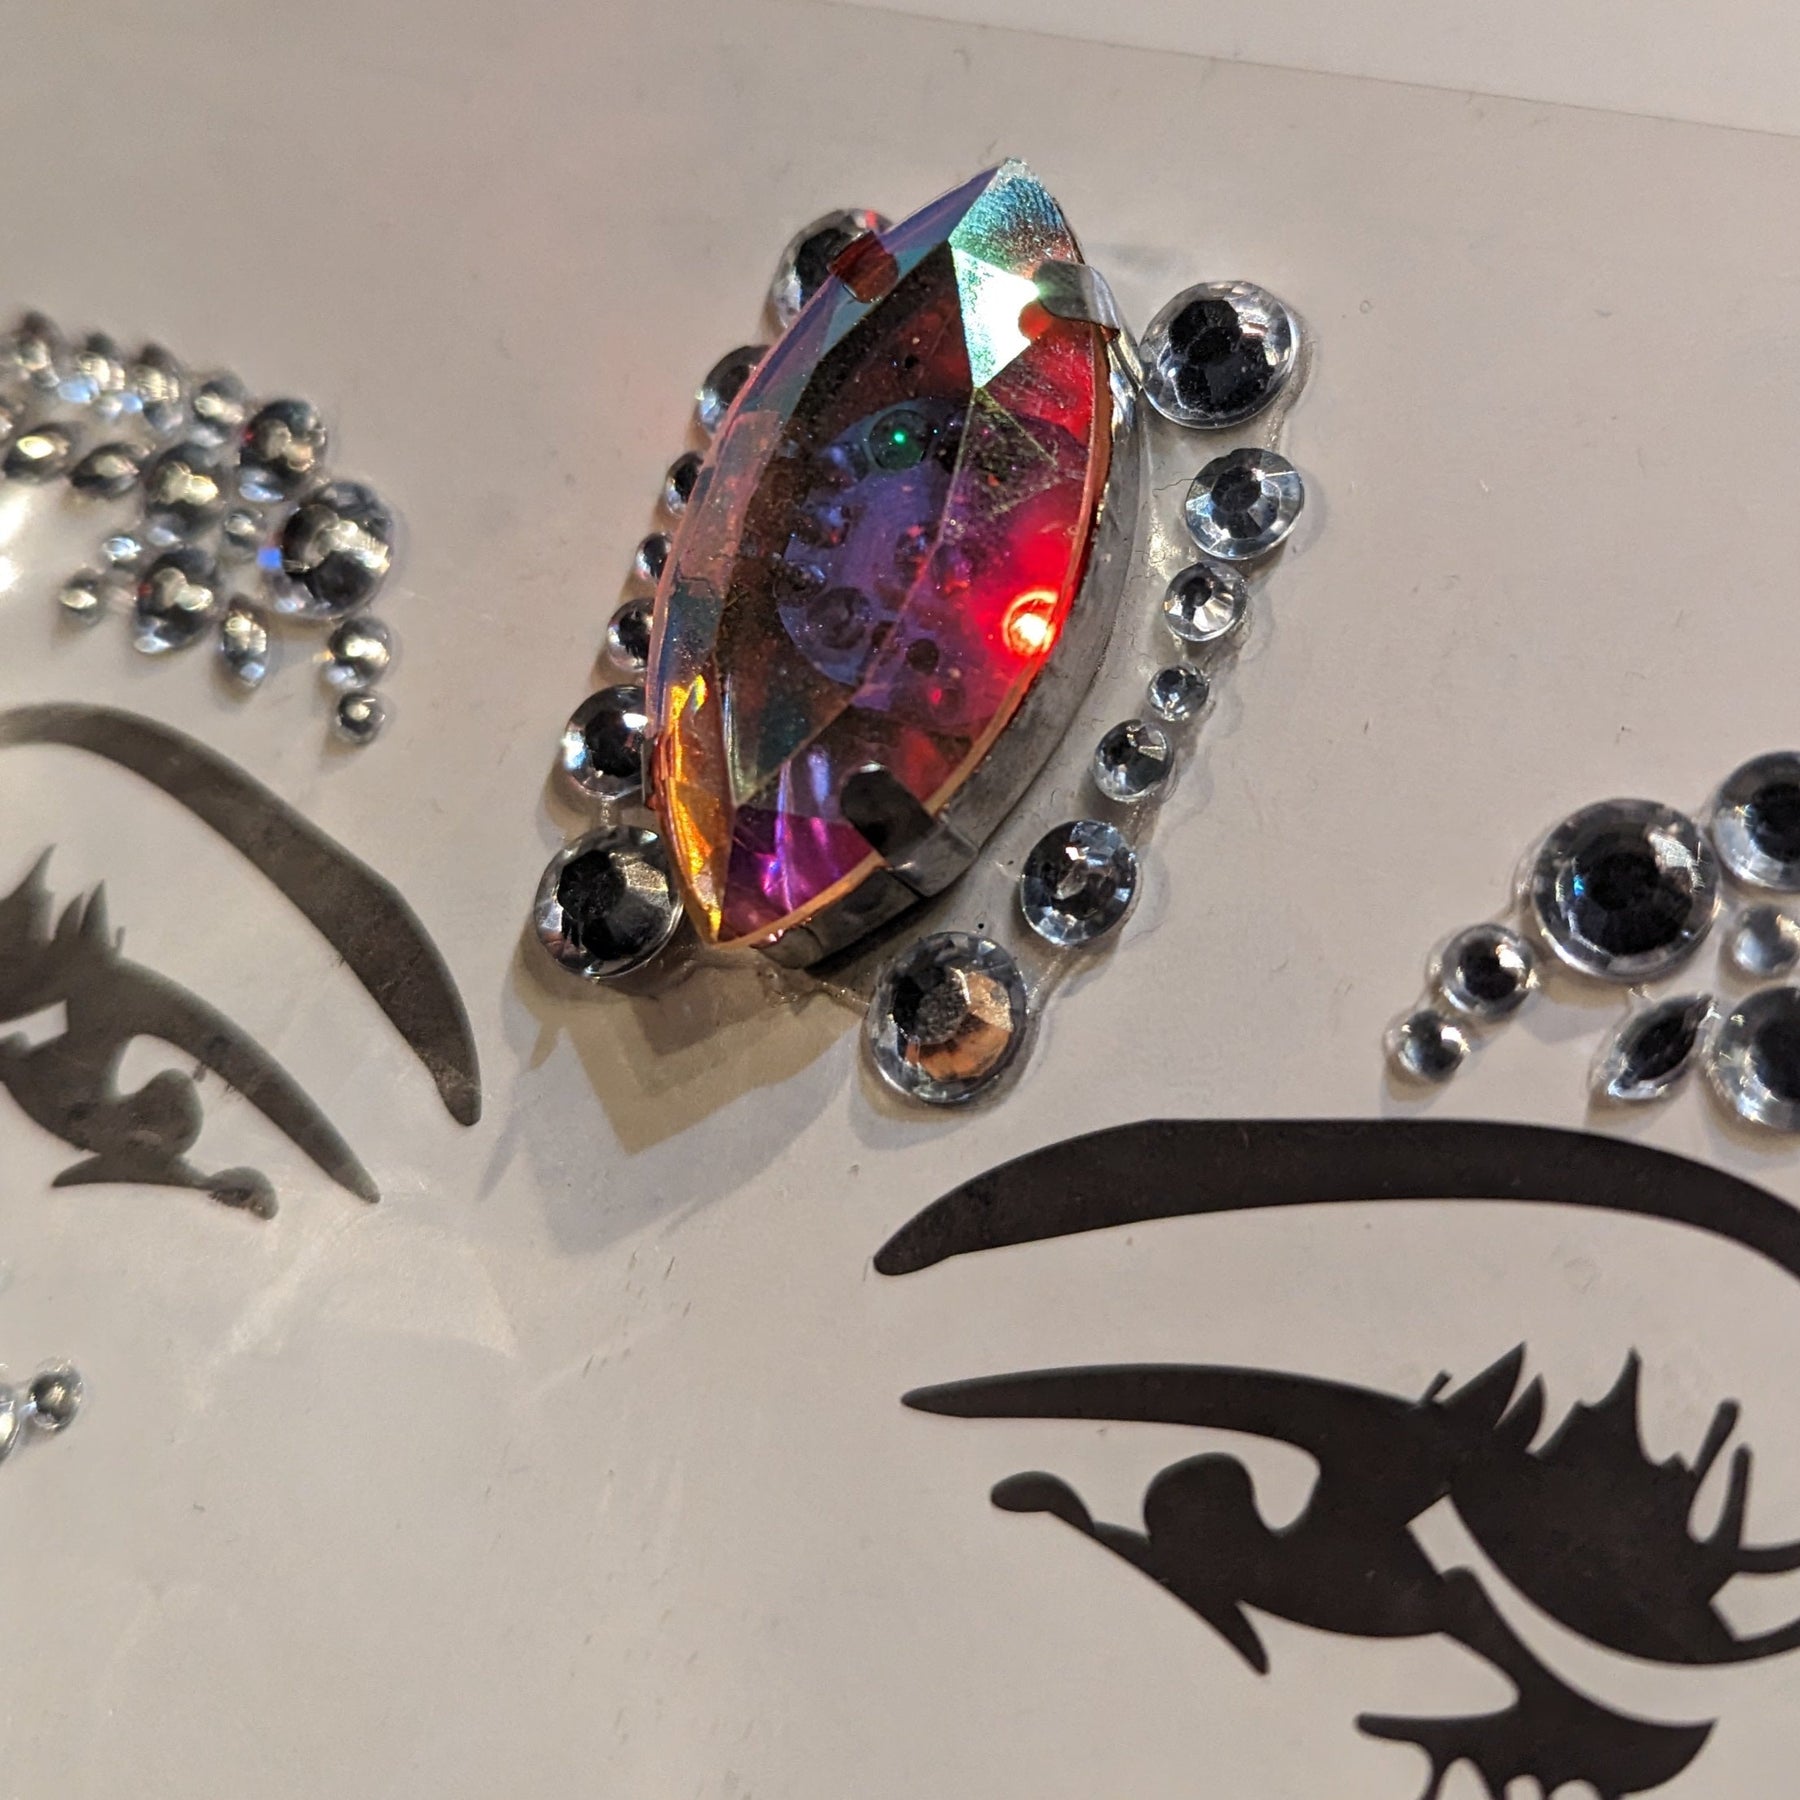 VENTA DE MUESTRA - Gemas de diamantes de imitación de joyería facial LED (se envía con entrega en marzo) - VENTA FINAL